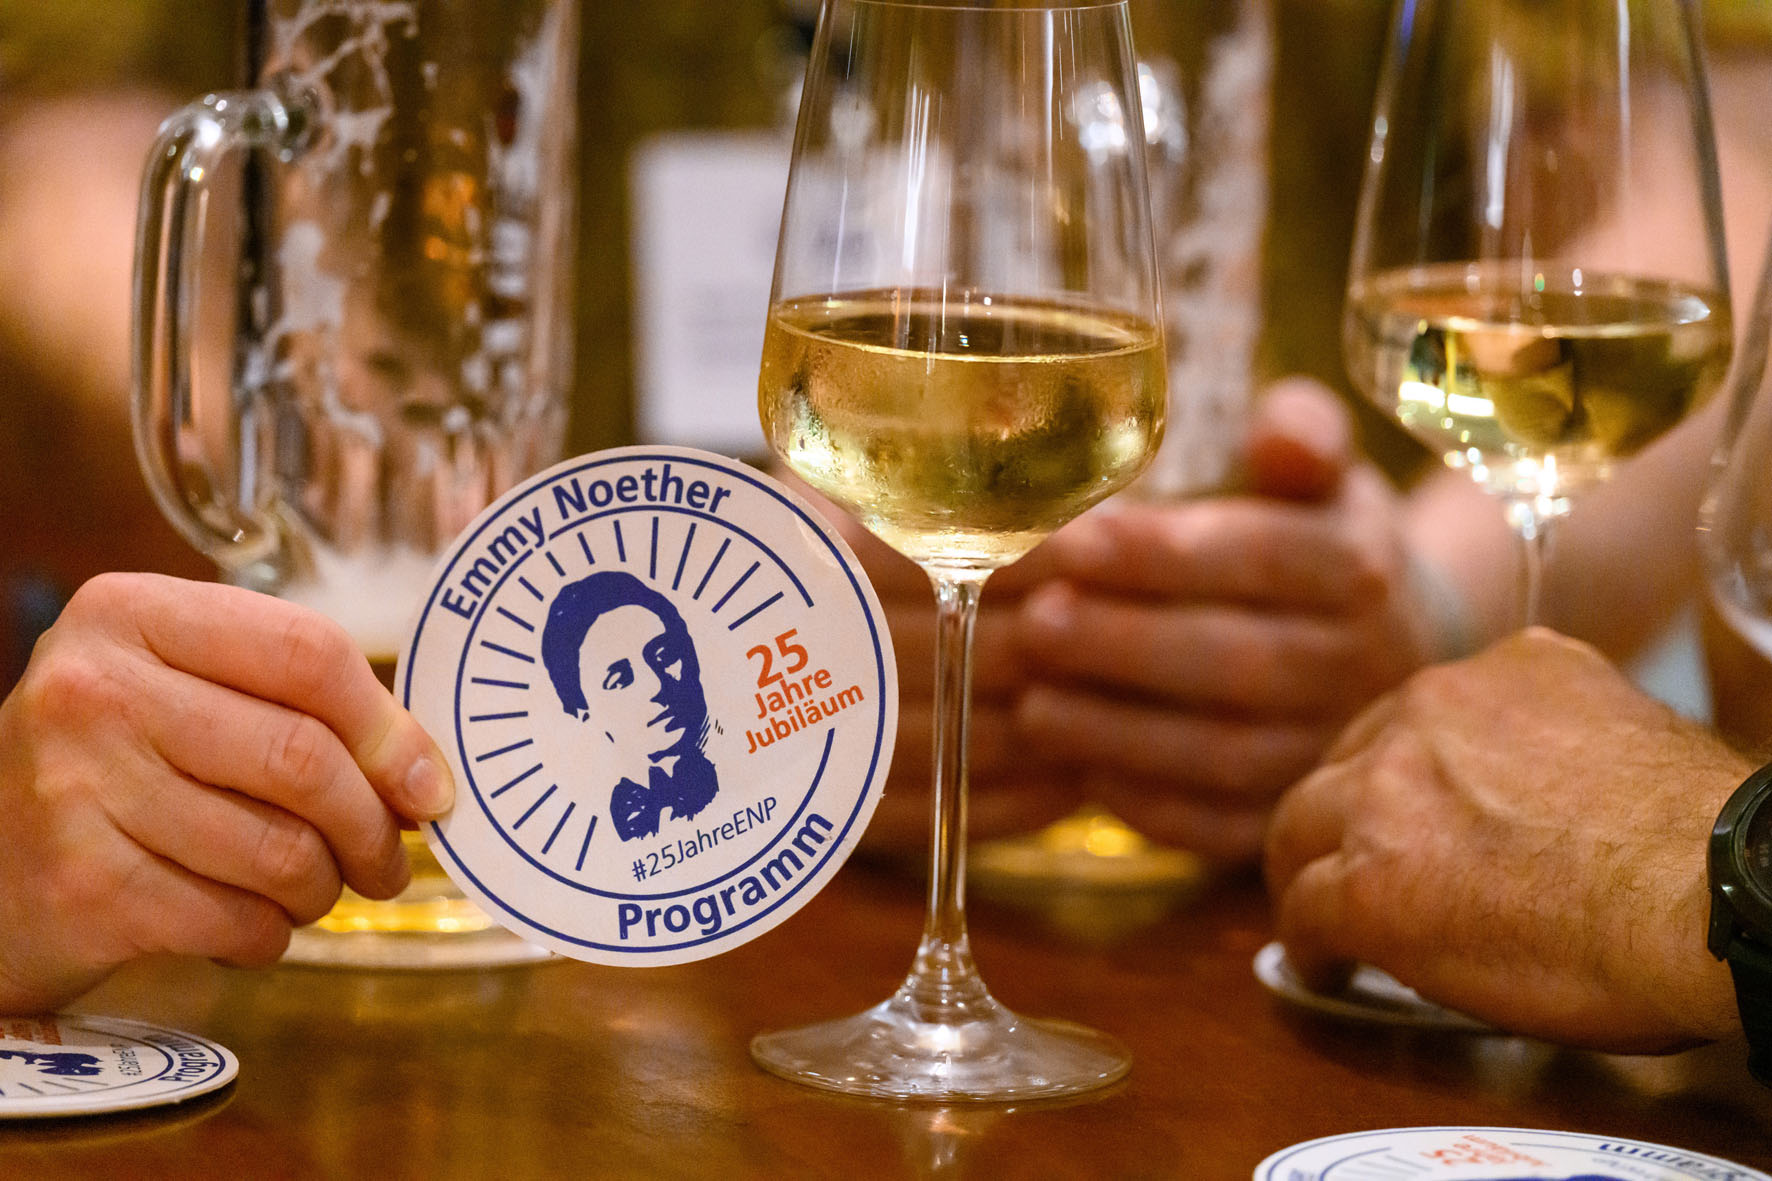 Ein Bierdeckel bedruckt mit "25 Jahre Emmy Noether-Programm" vor einem Weinglas